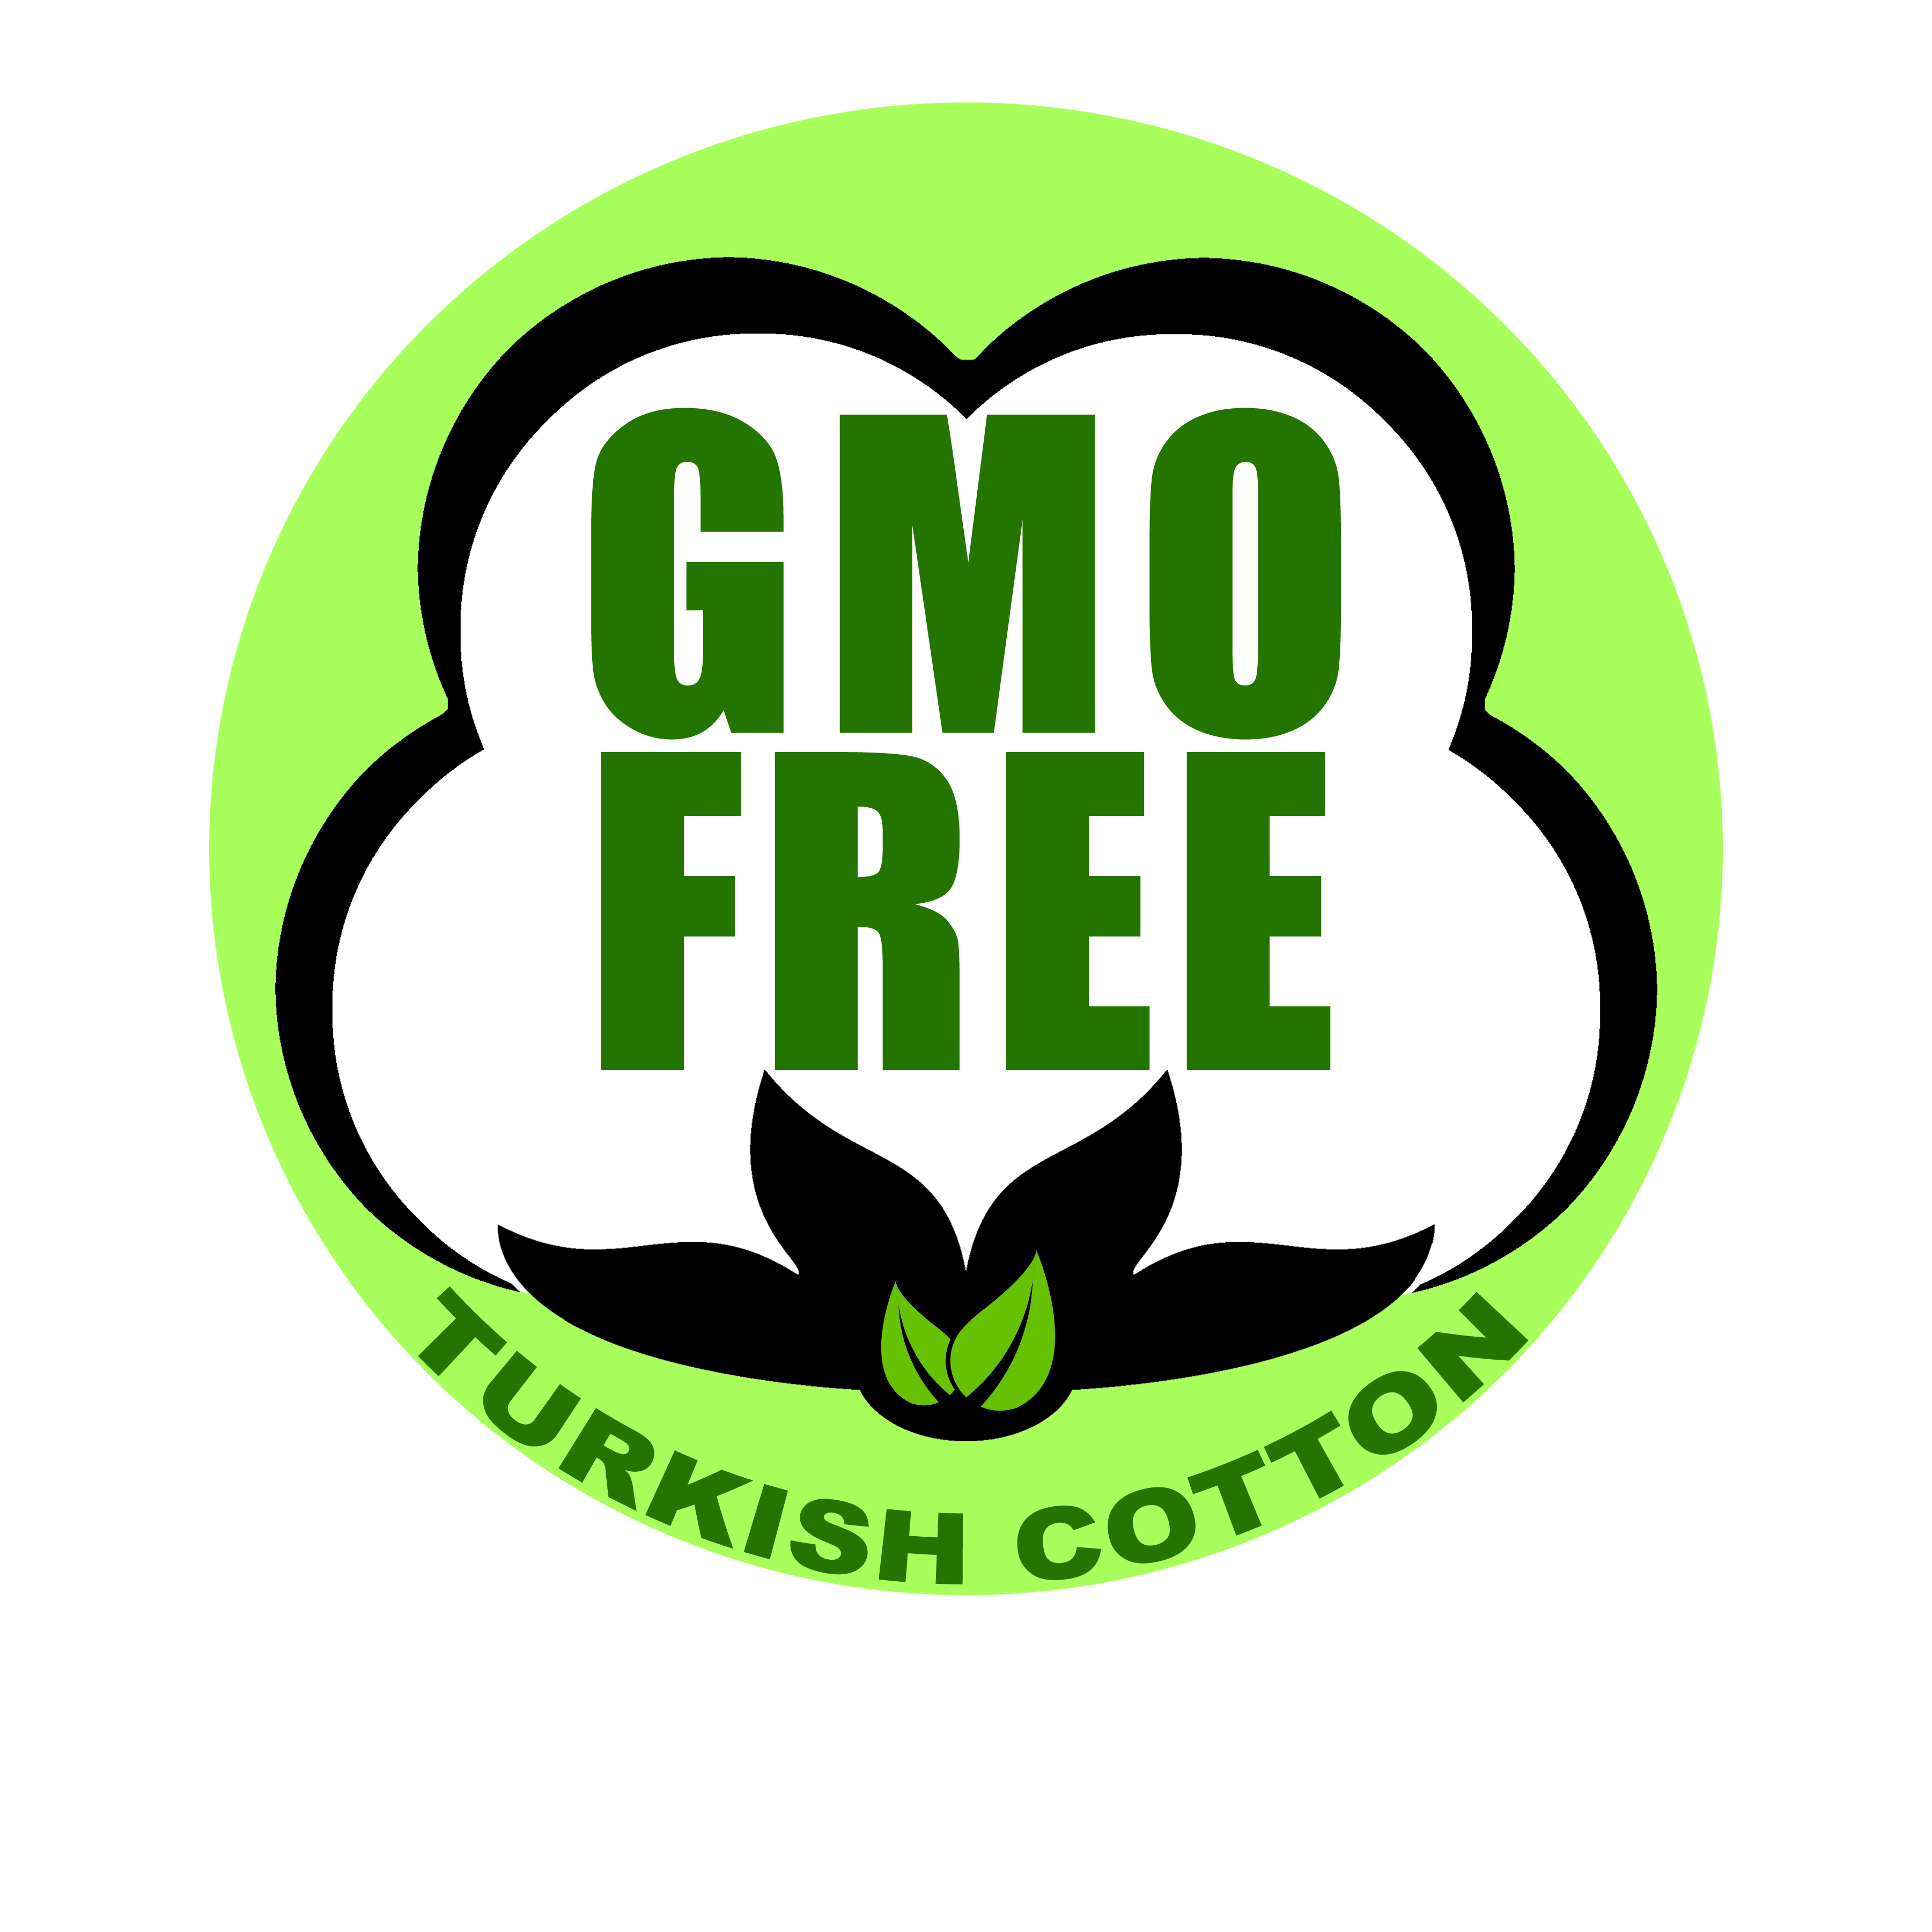 GMO FREE TURKISH COTTON